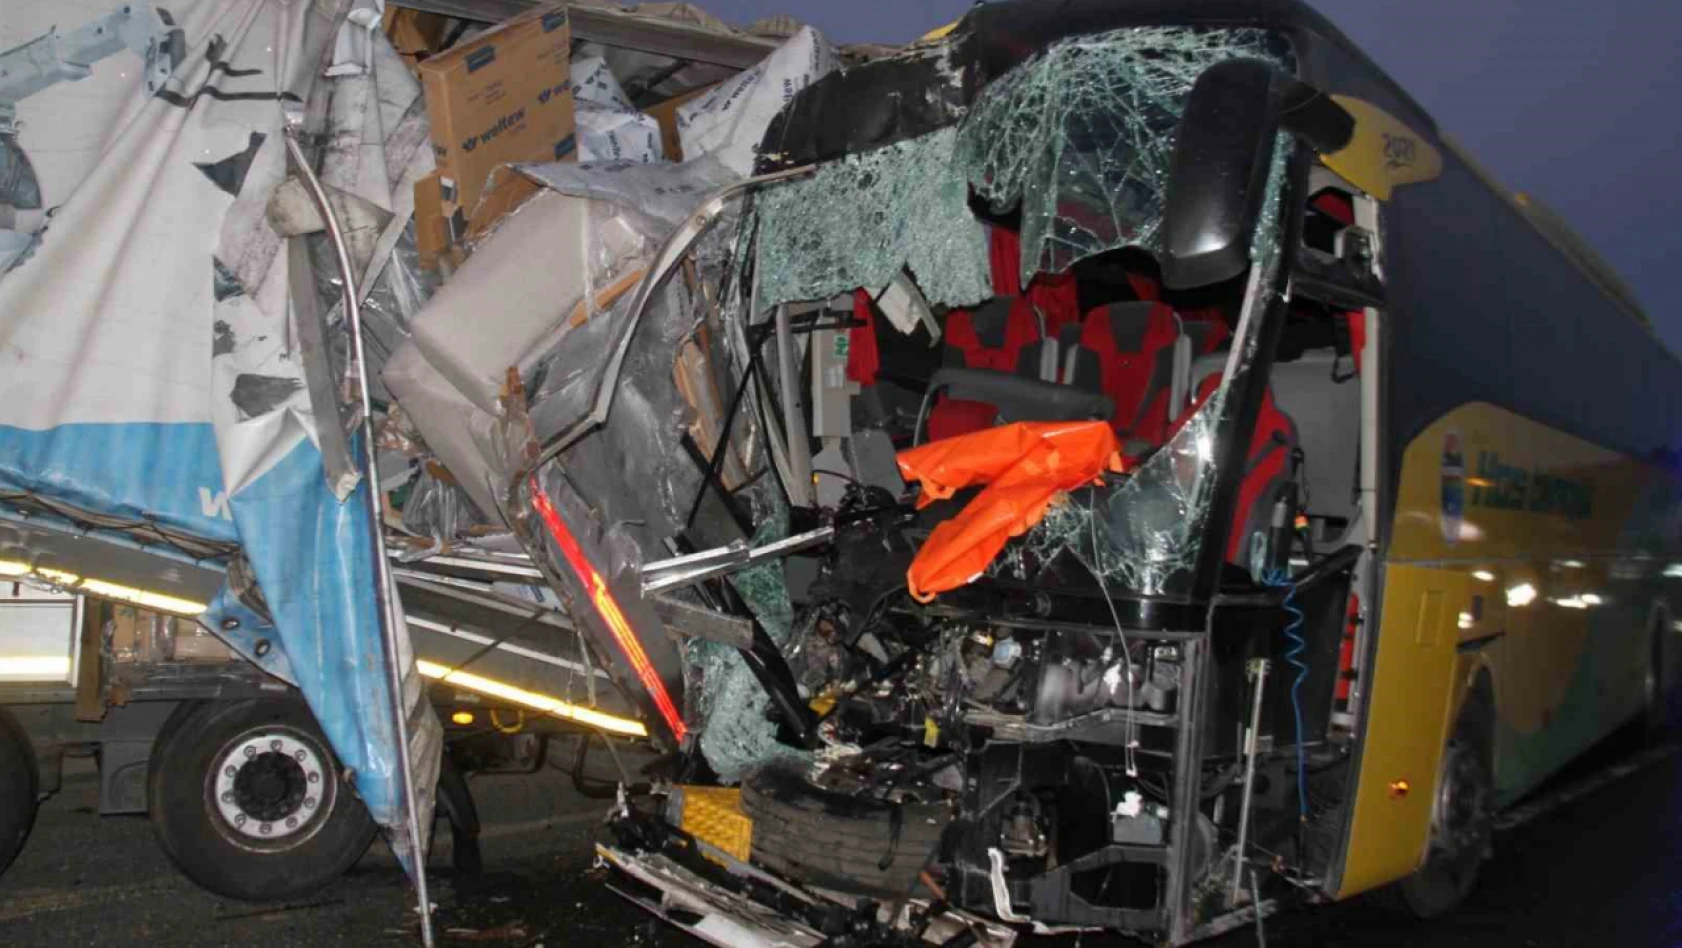 Elazığ'da yolcu otobüsü ile tır çarpıştı: 1 ölü, 32 yaralı